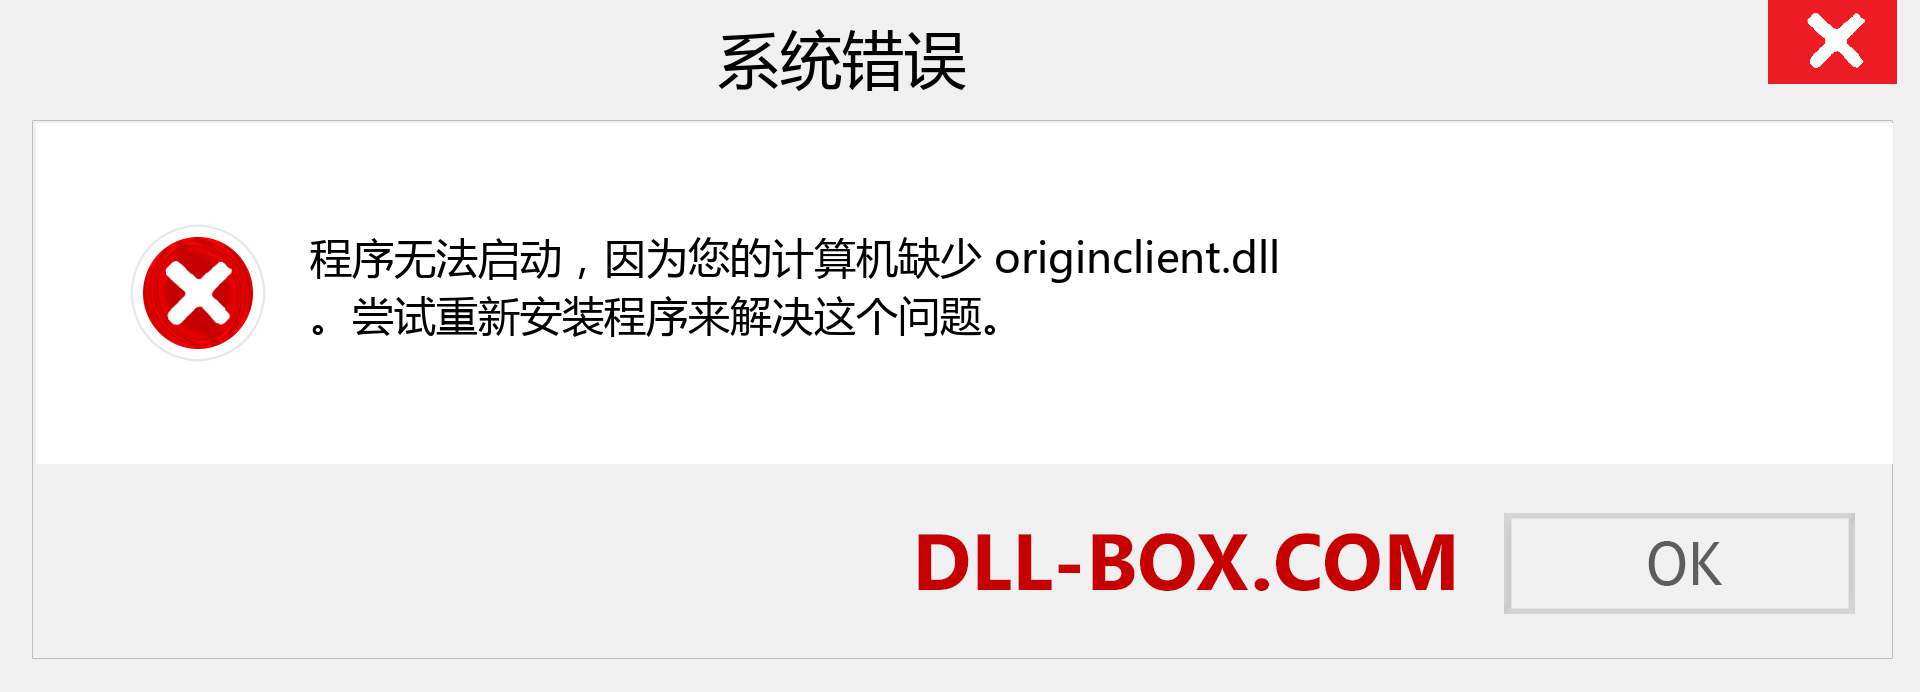 originclient.dll 文件丢失？。 适用于 Windows 7、8、10 的下载 - 修复 Windows、照片、图像上的 originclient dll 丢失错误